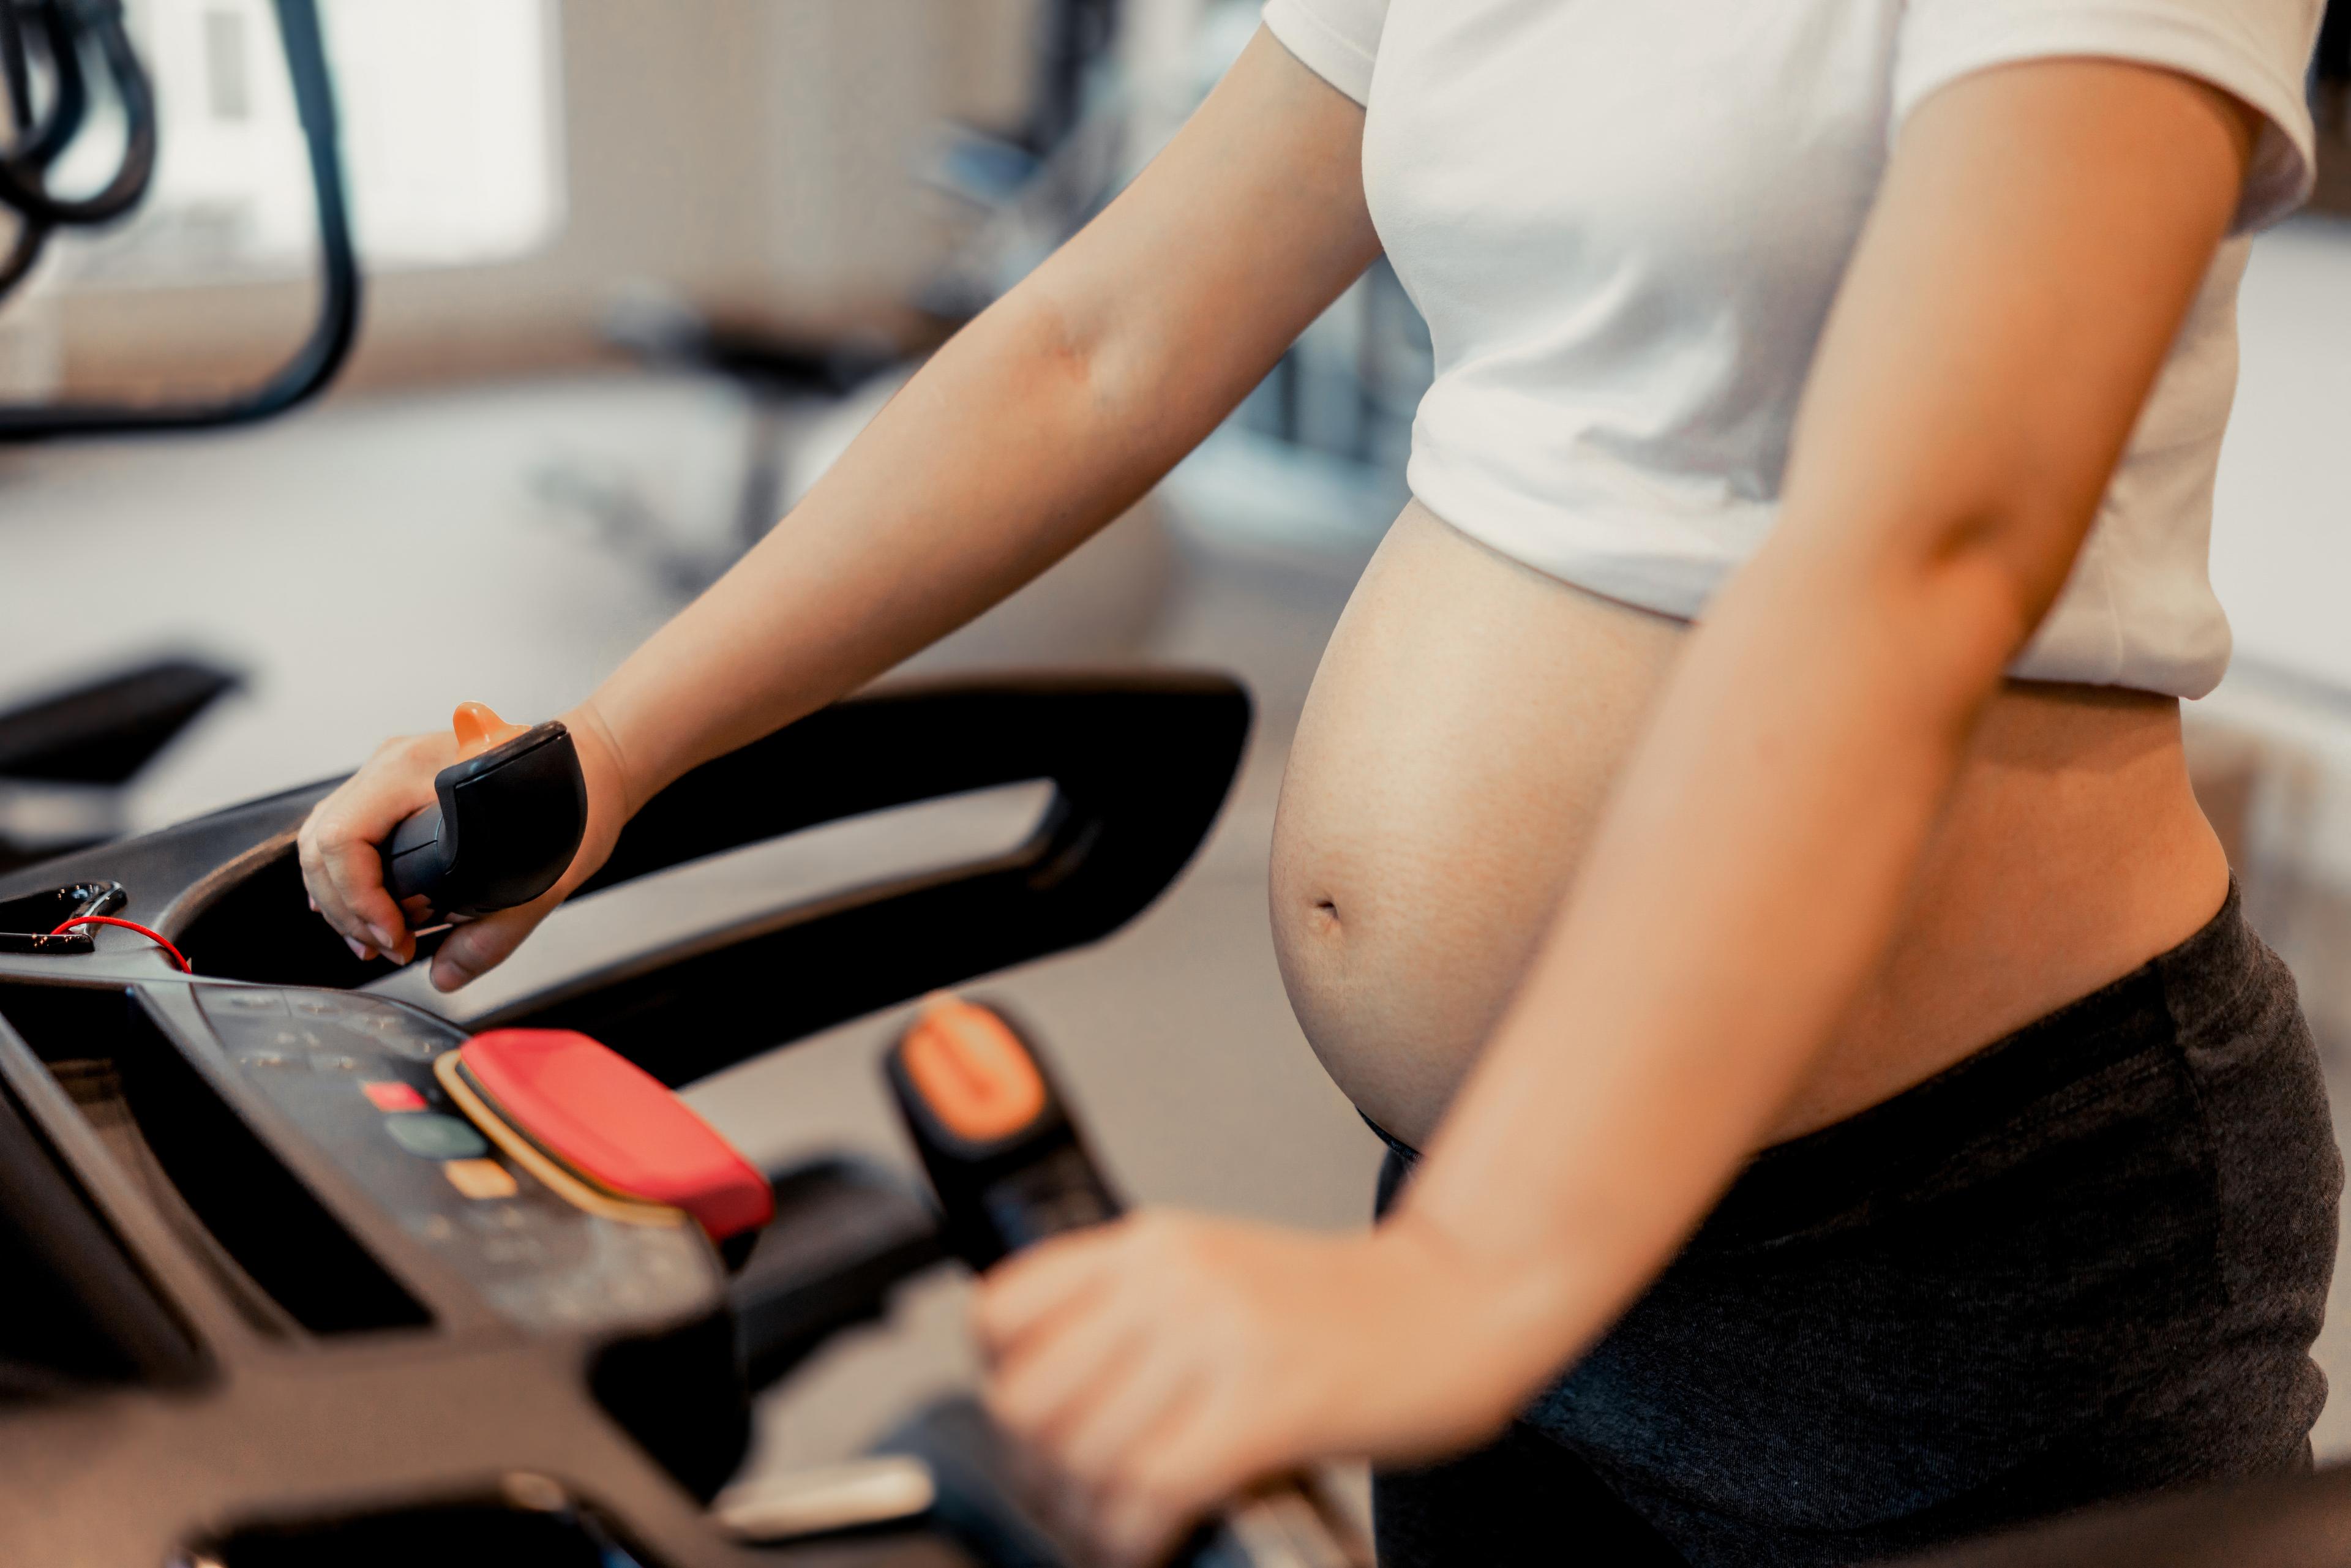 Ćwiczenia w ciąży - ćwiczenia z piłką i nie tylko - jakie są bezpieczne? Ćwiczenia na piłce w ciąży, bezpieczne ćwiczenia dla każdej ciężarnej